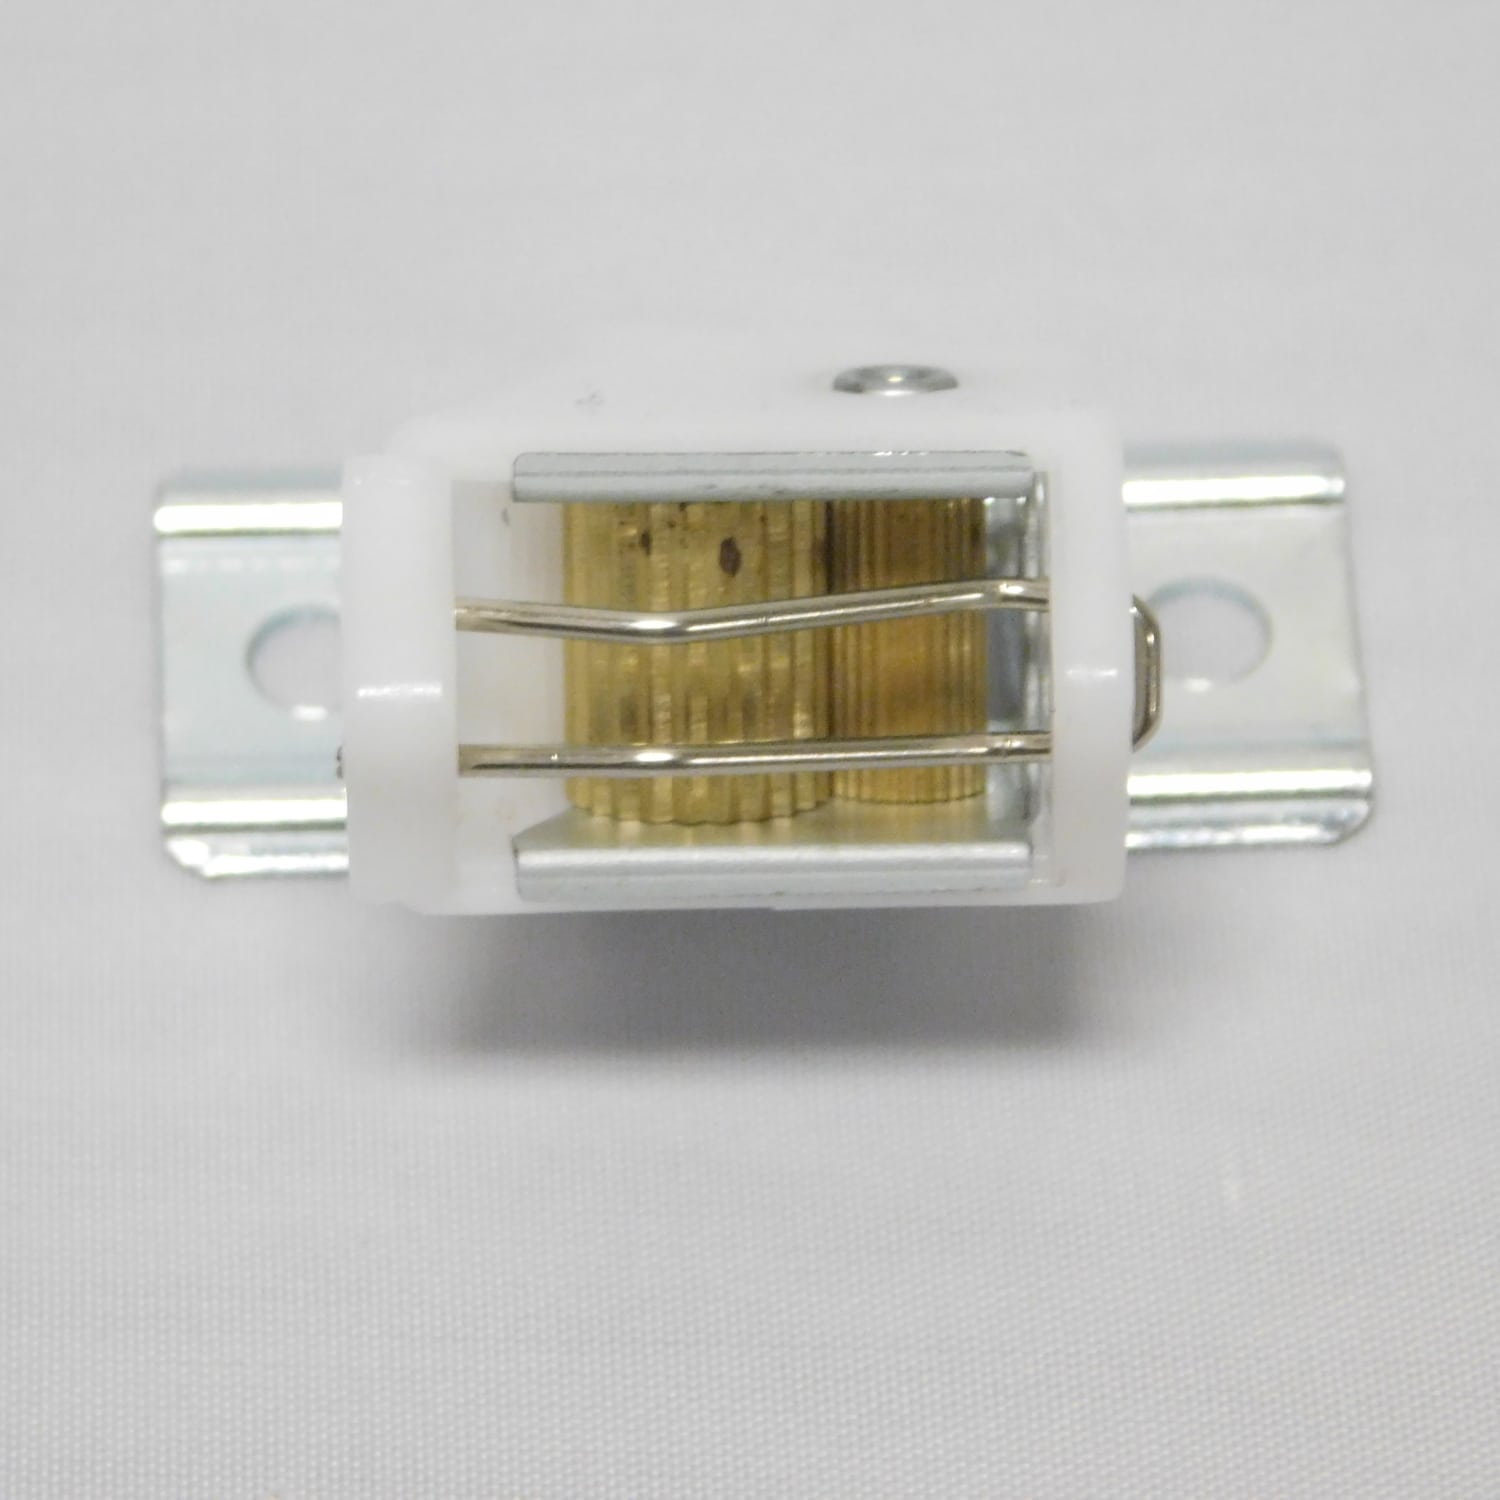 Qty. 12 Window Blind Lock Roman Shade Cord Locks with 3/4" Self Drill Screws 